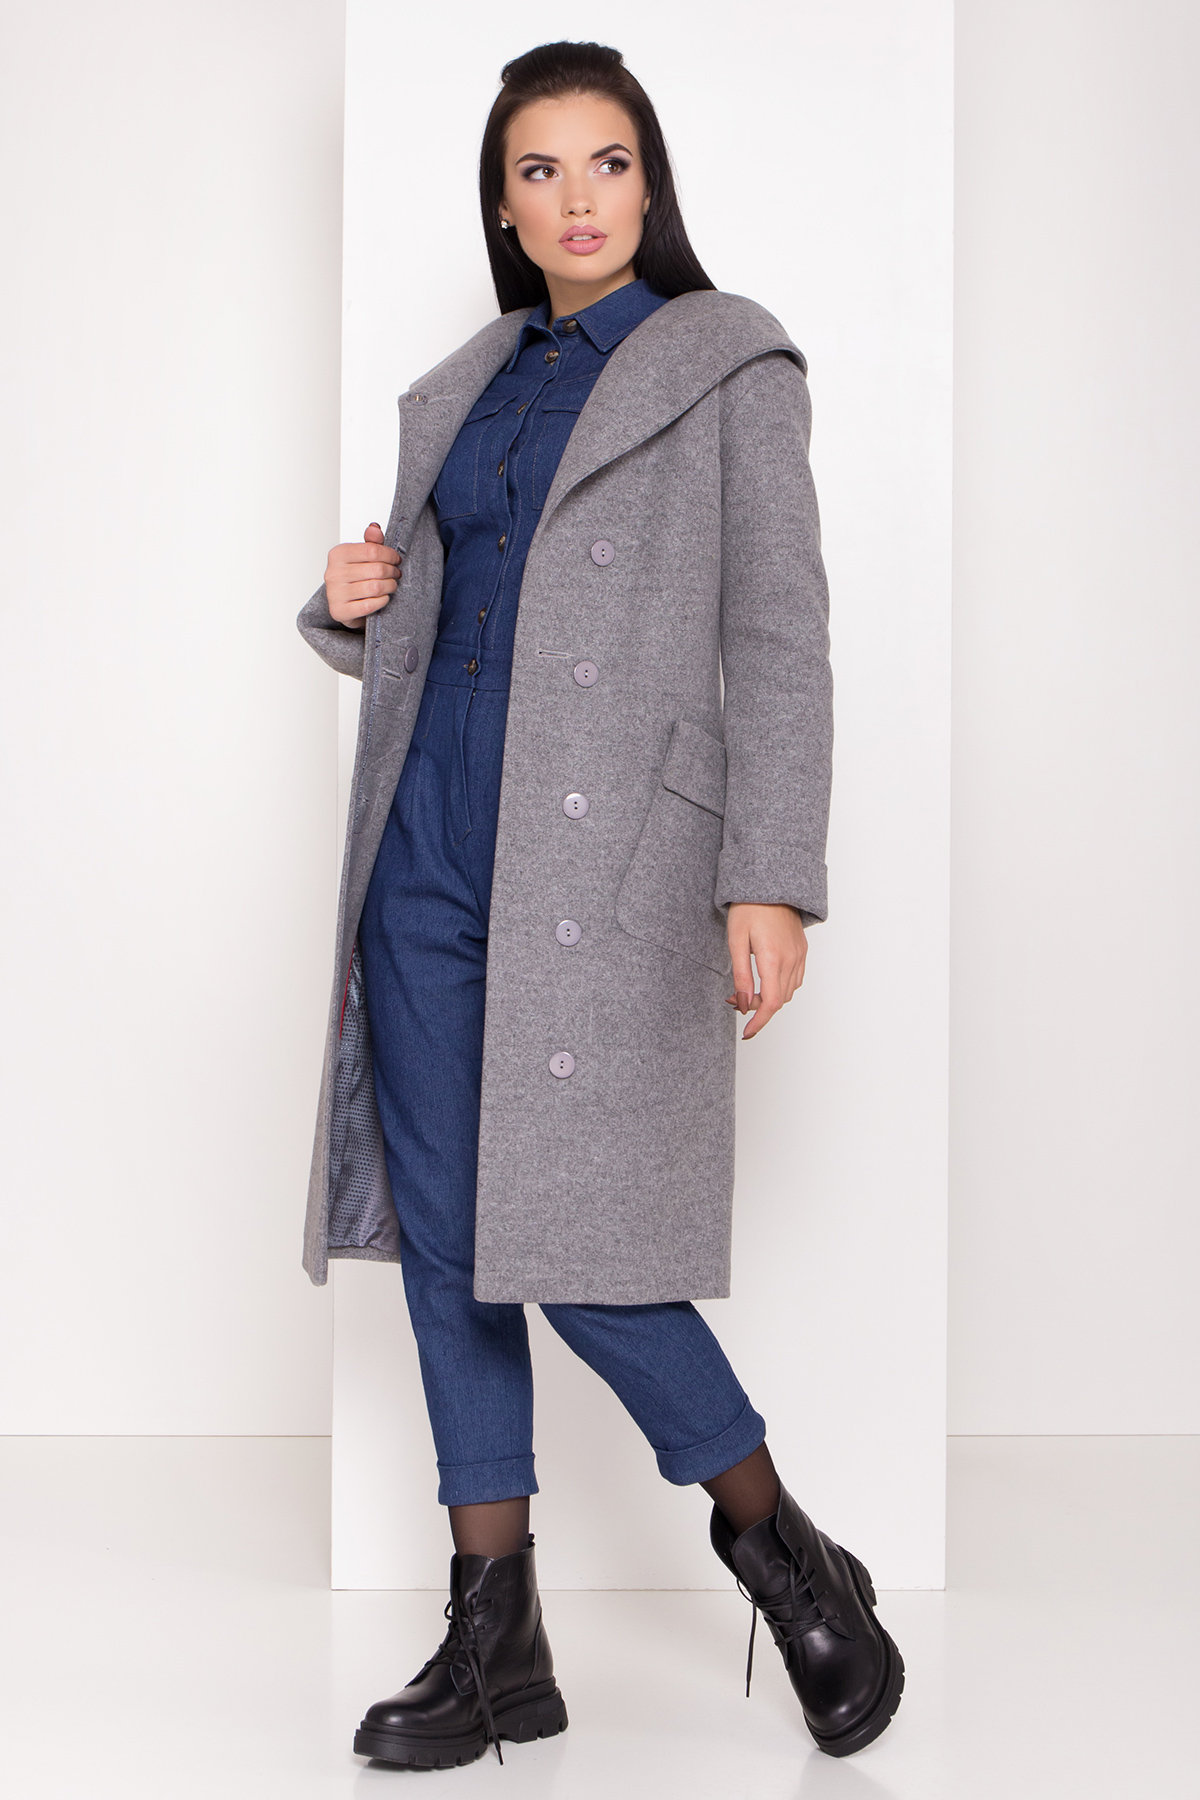 Женское пальто зима с накладными карманами Анджи 8299 АРТ. 44423 Цвет: Серый меланж - фото 1, интернет магазин tm-modus.ru